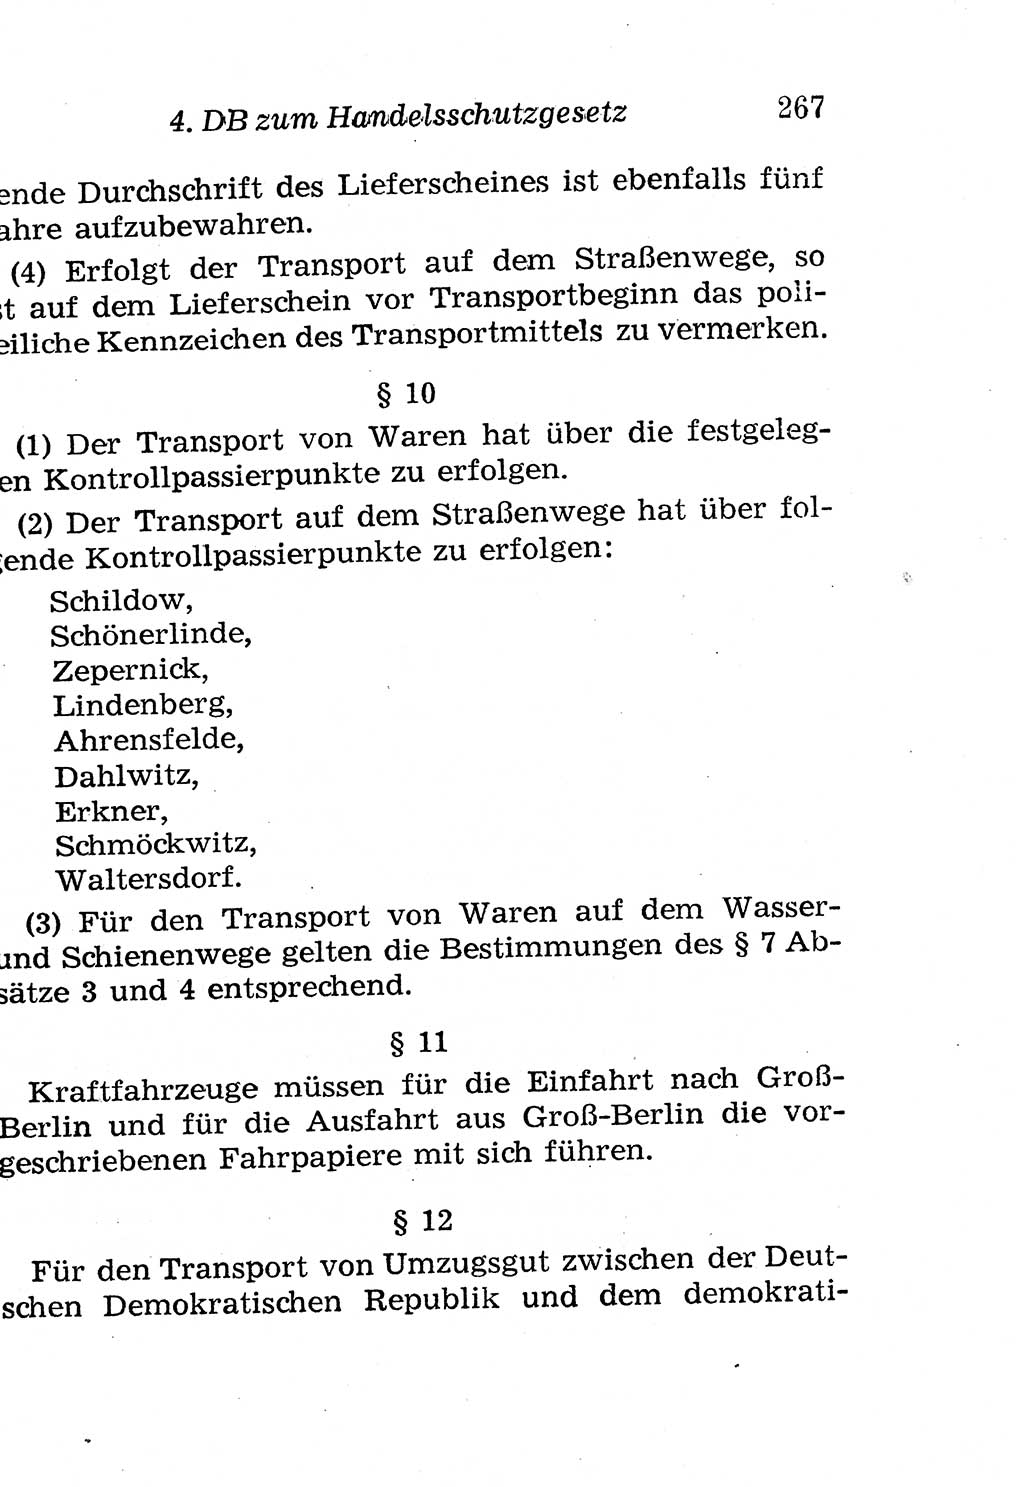 Strafgesetzbuch (StGB) und andere Strafgesetze [Deutsche Demokratische Republik (DDR)] 1958, Seite 267 (StGB Strafges. DDR 1958, S. 267)